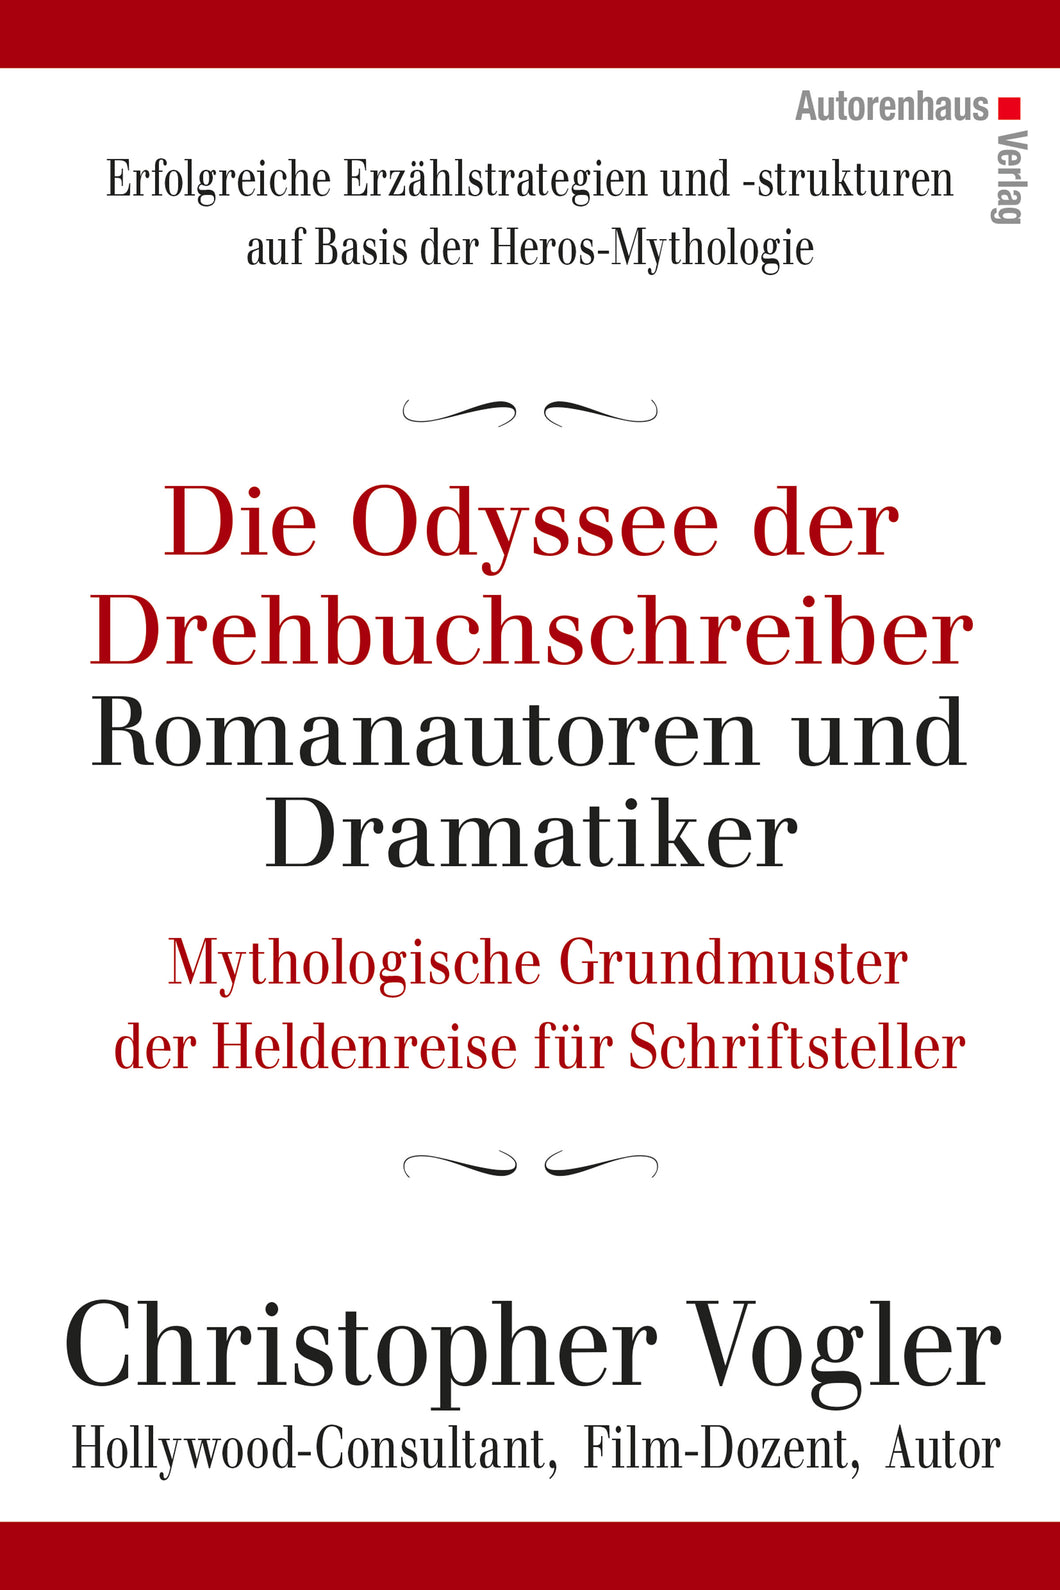 Christopher Vogler: Die Odyssee der Drehbuchschreiber, Romanautoren und Dramatiker